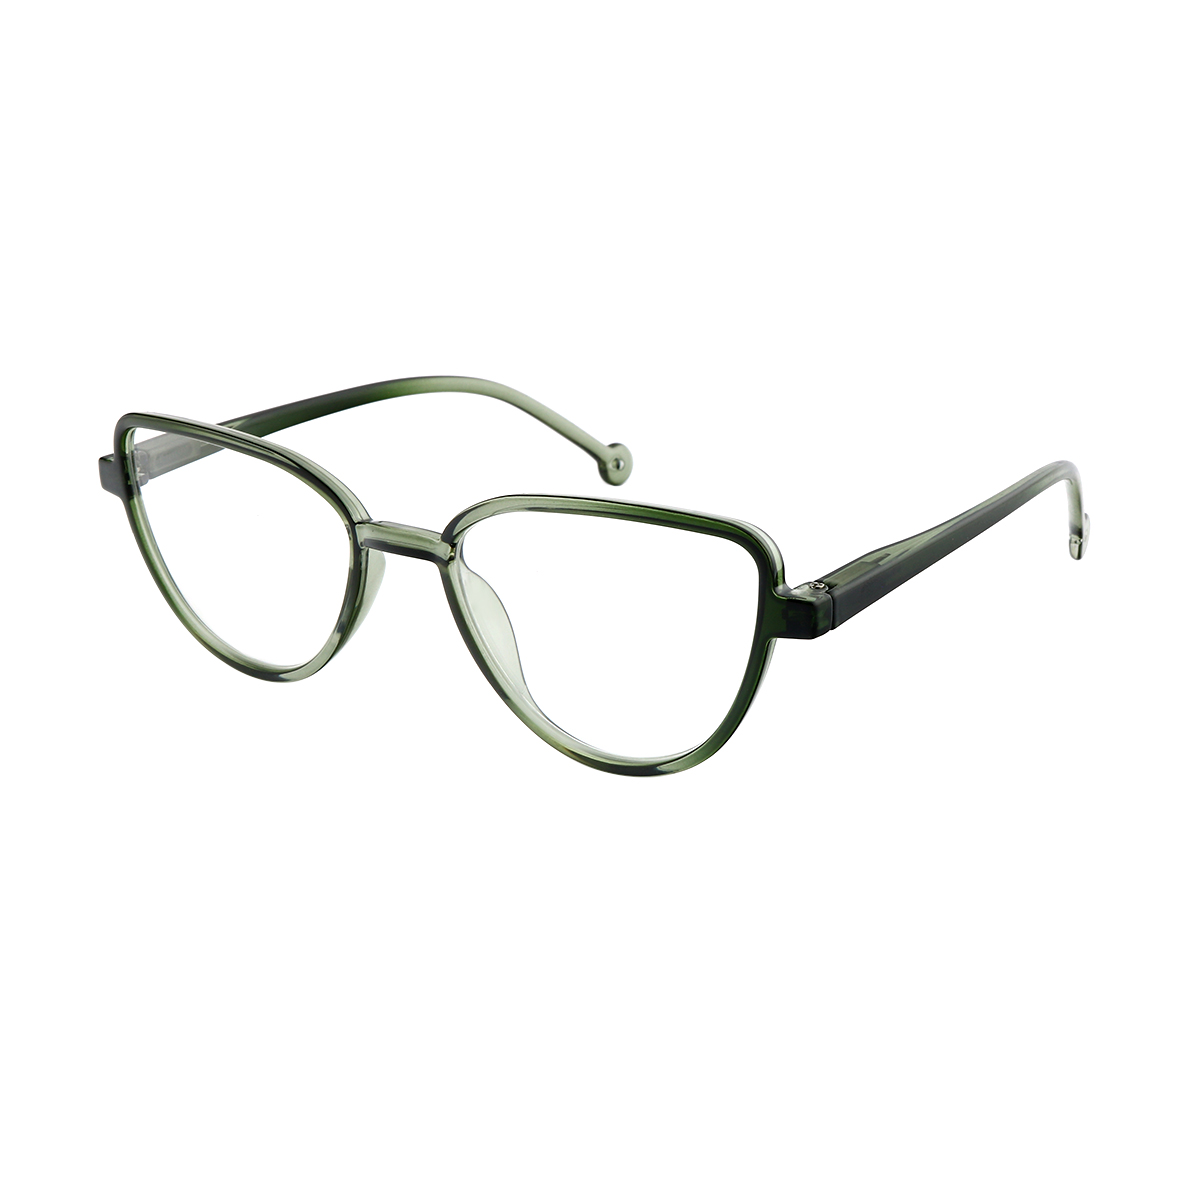 Glen - Cat-eye Green Reading Glasses for Women